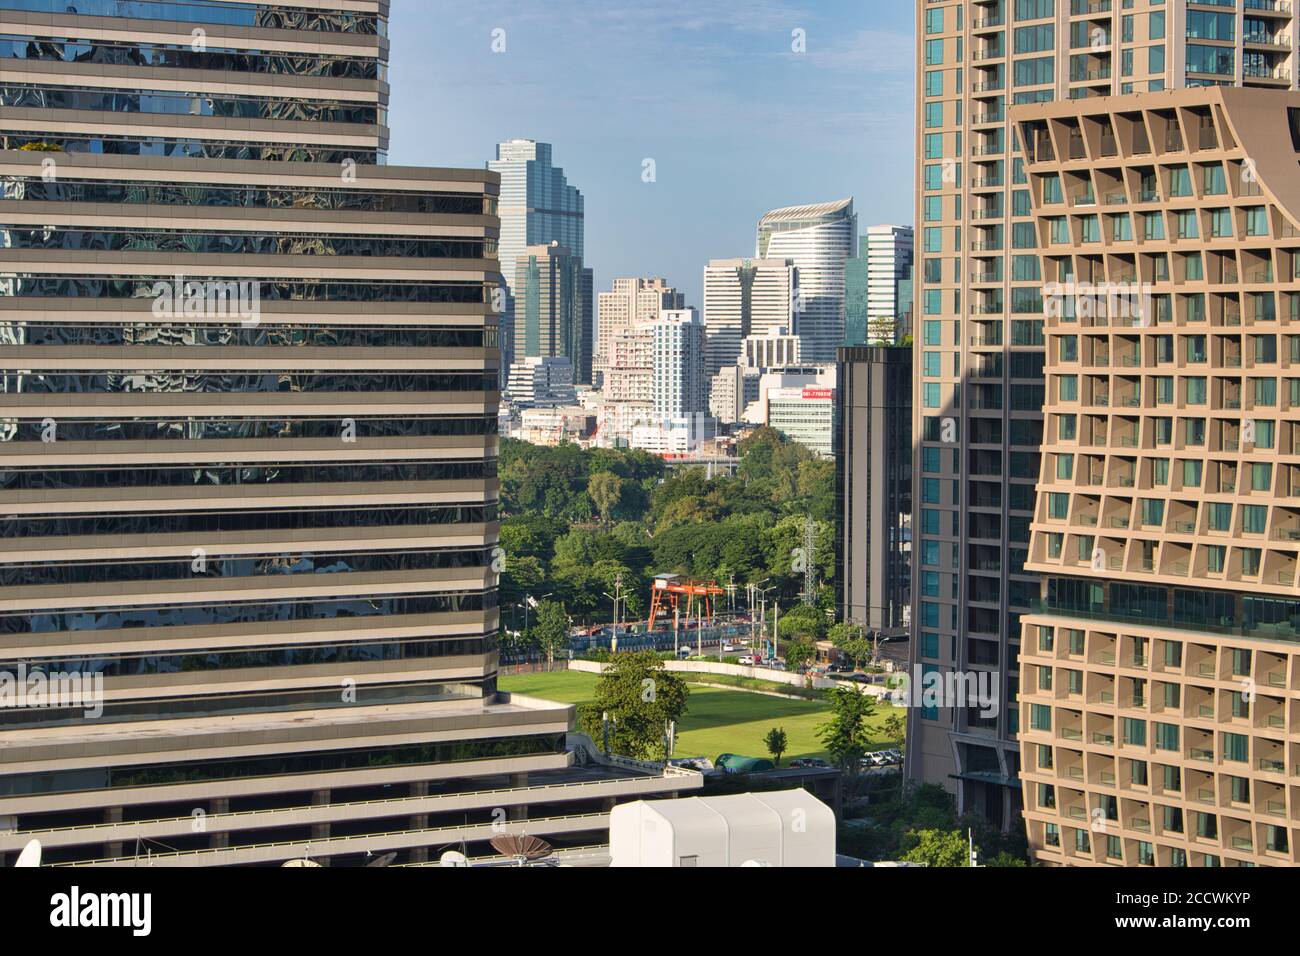 Lo splendido skyline di Bangkok, la capitale della Thailandia con tutti i suoi grattacieli di giorno! Foto Stock